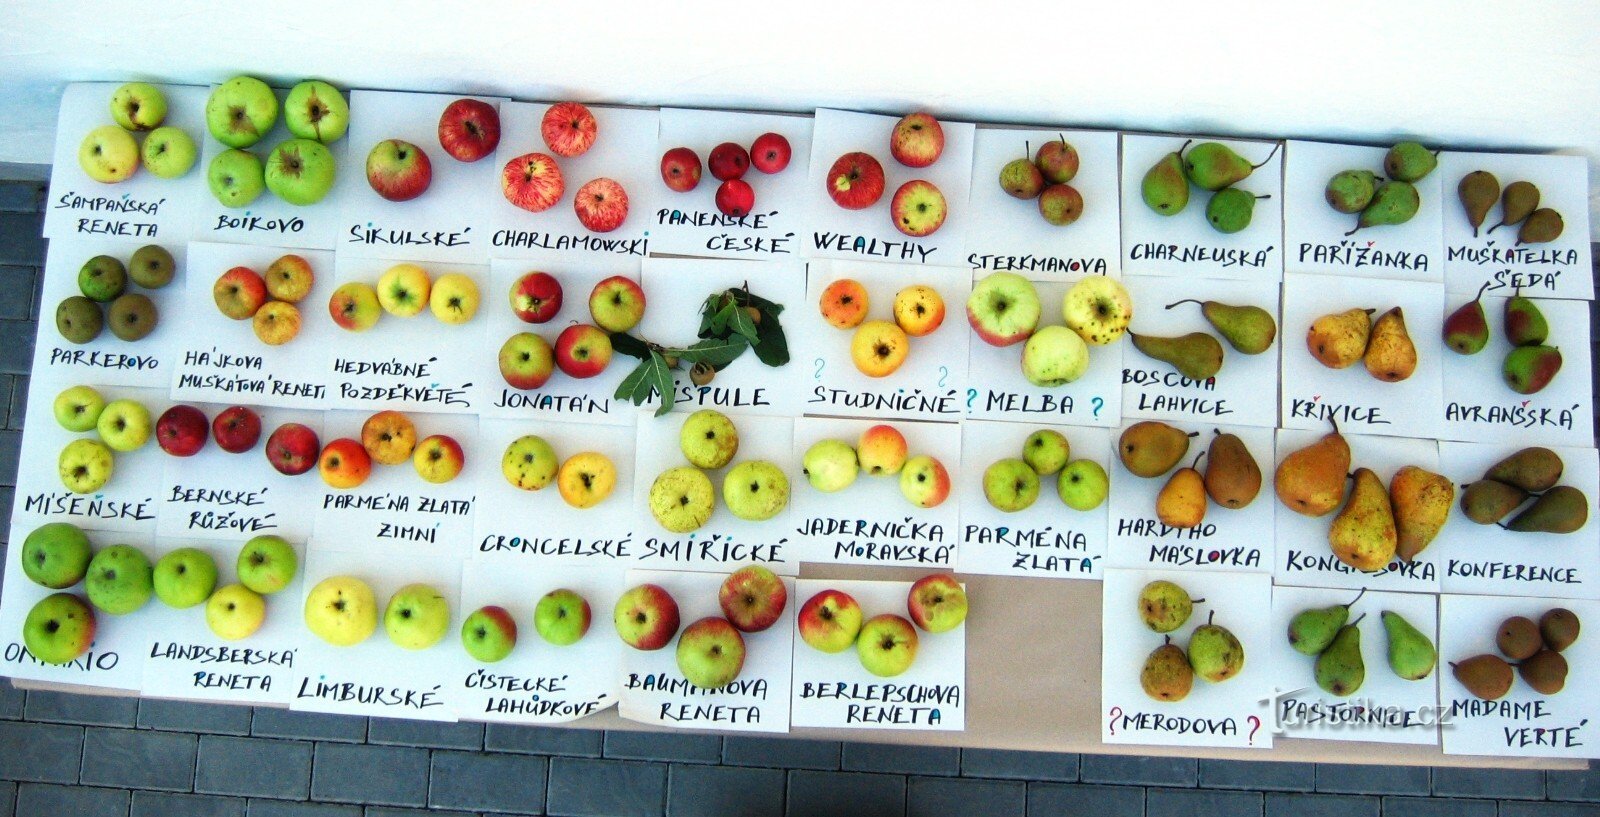 Las sidras de Hostětín están hechas de una mezcla de variedades de manzanas de los Cárpatos Blancos, jejic